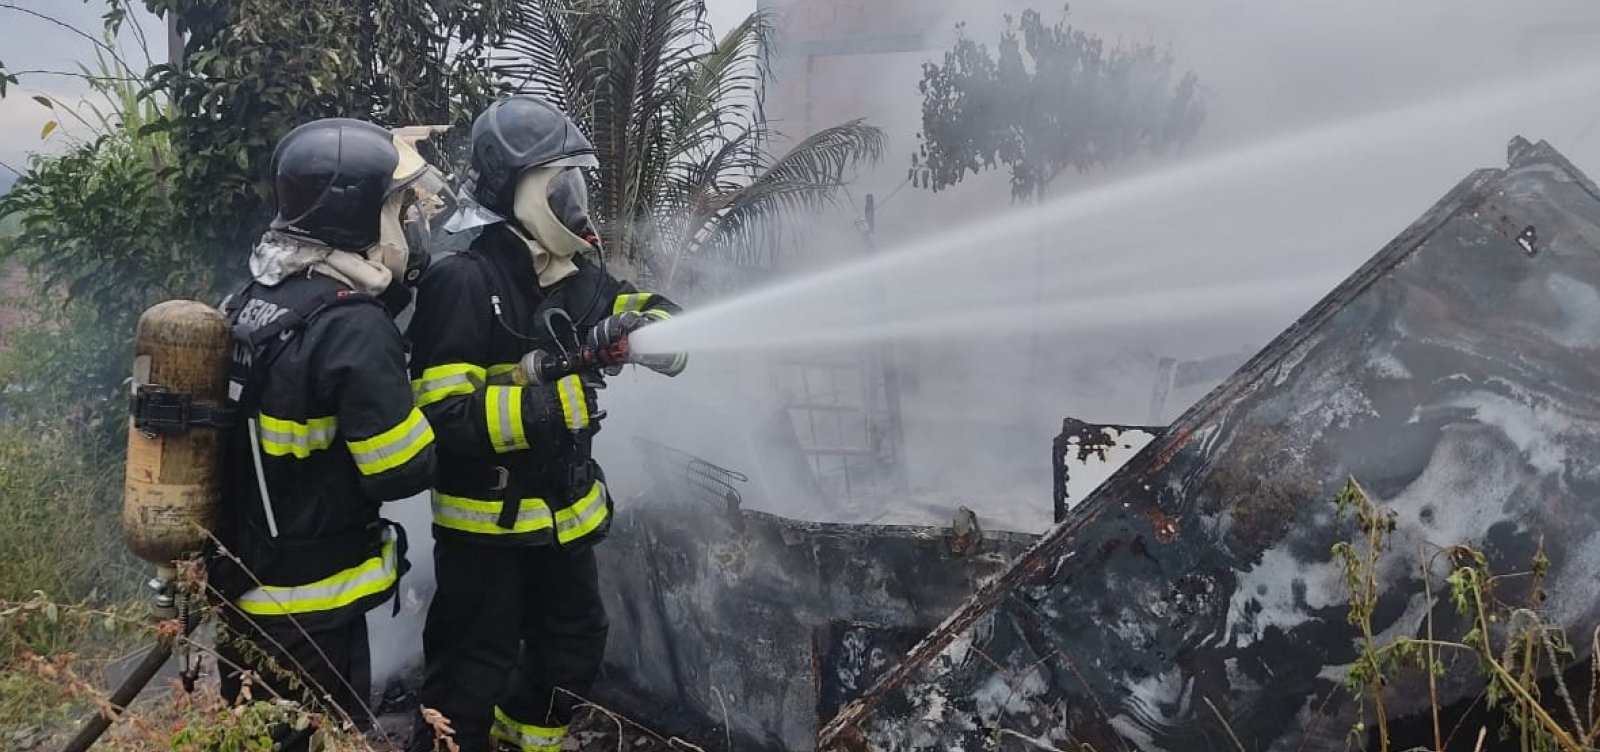 Incêndio destrói parte de imóvel em Jequié; situação não deixou vítimas